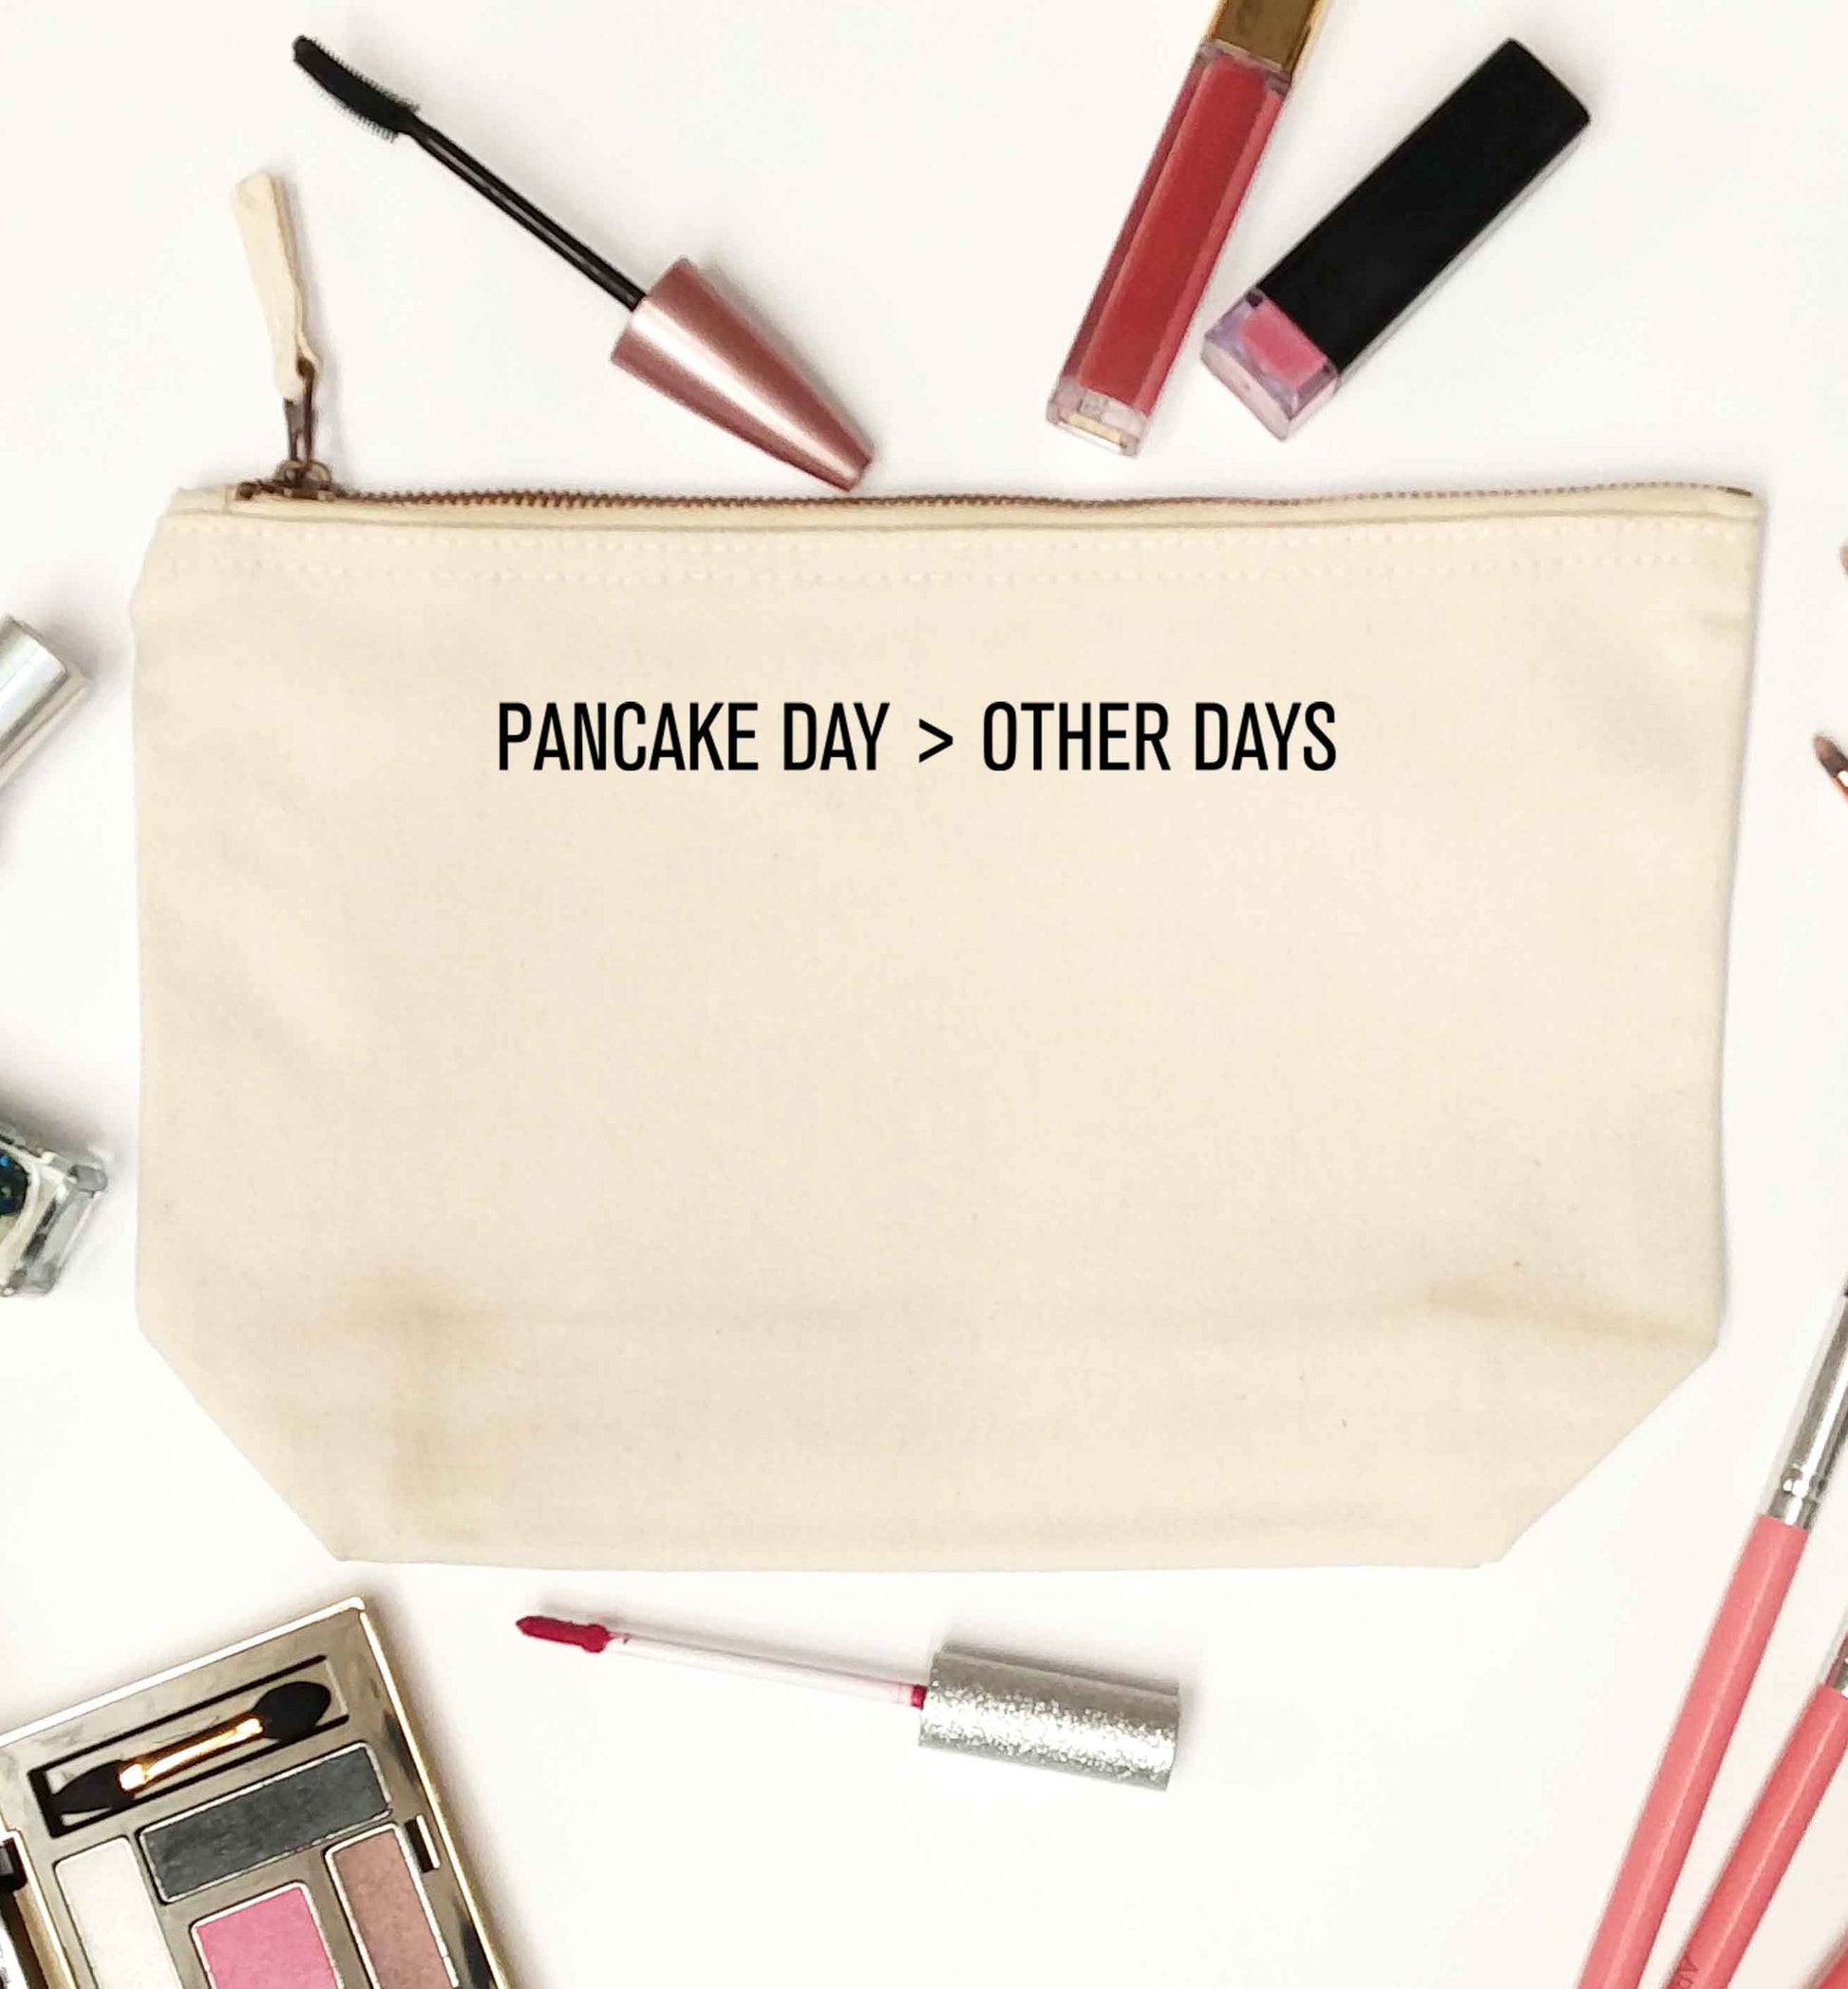 Pancake day > other days natural makeup bag